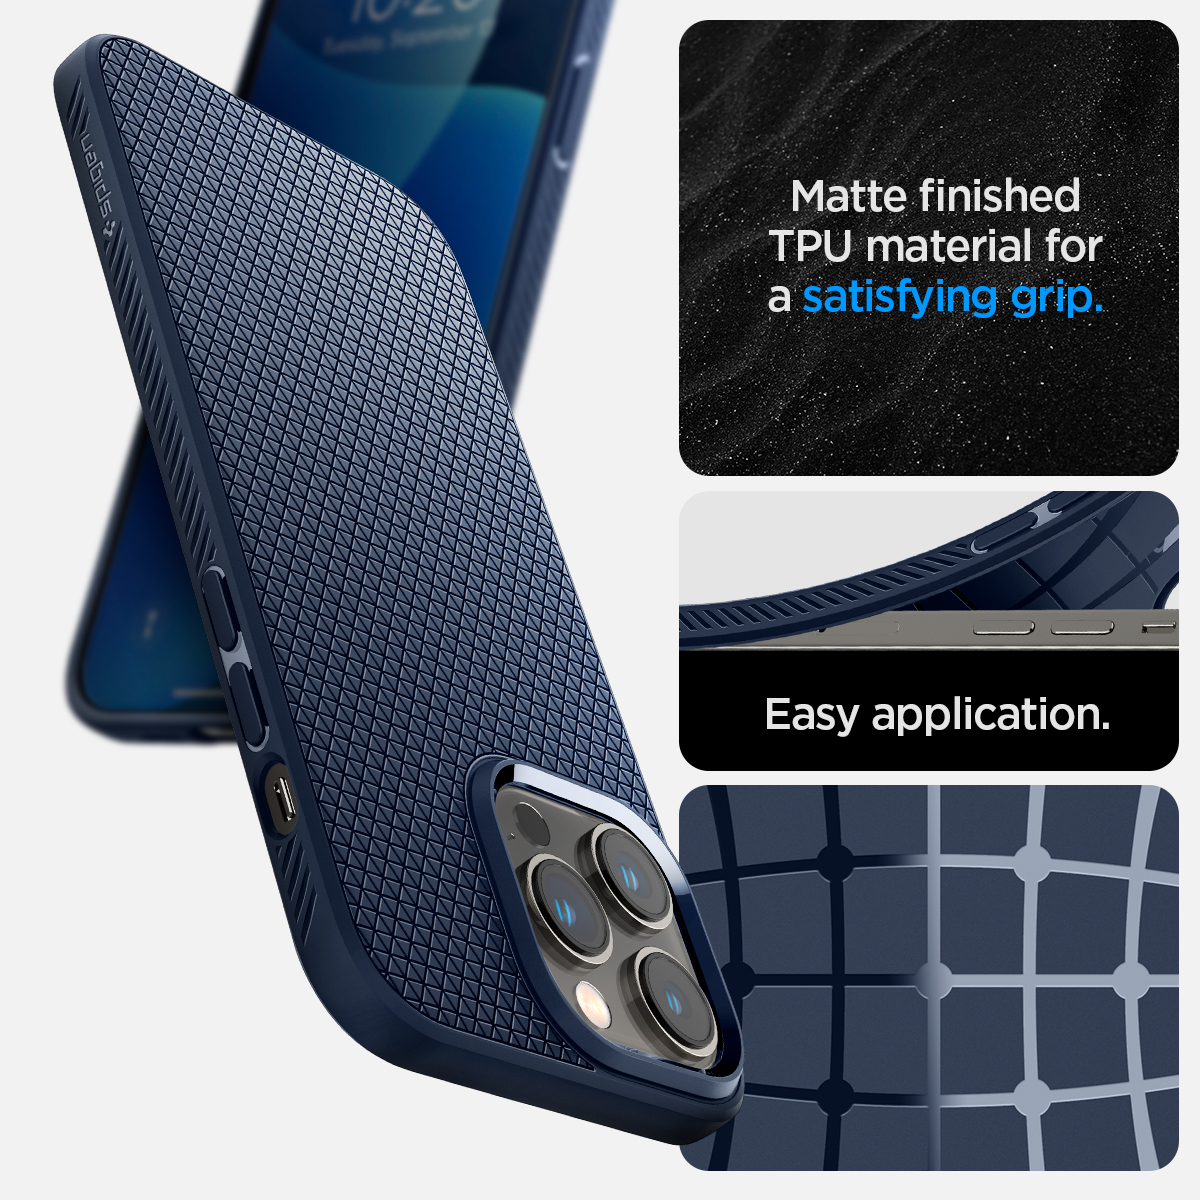 Ôp lưng chống sốc họa tiết tam giác dành cho iPhone 14 / 14 Plus / 14 Pro / 14 Pro Max - Hàng chính hãng